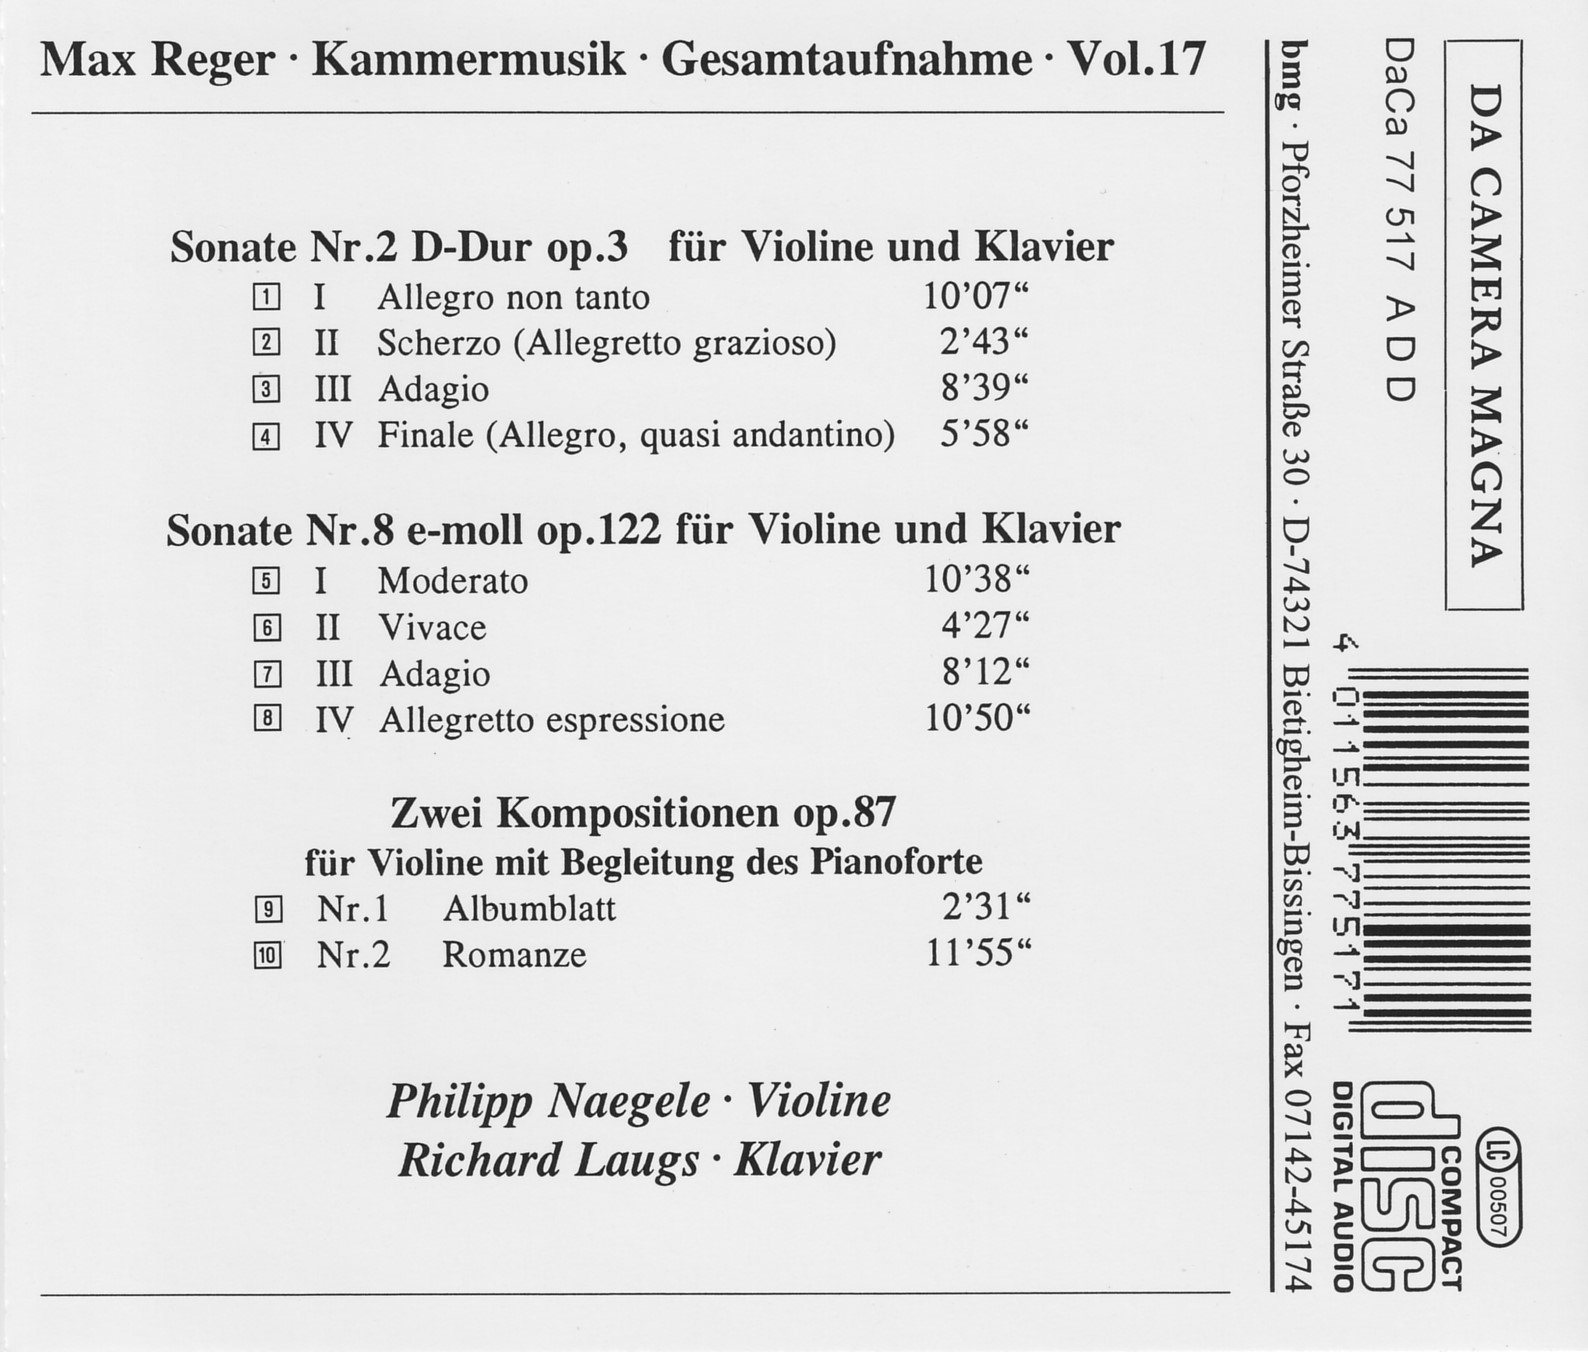 Max Reger - Kammermusik komplett Vol. 17